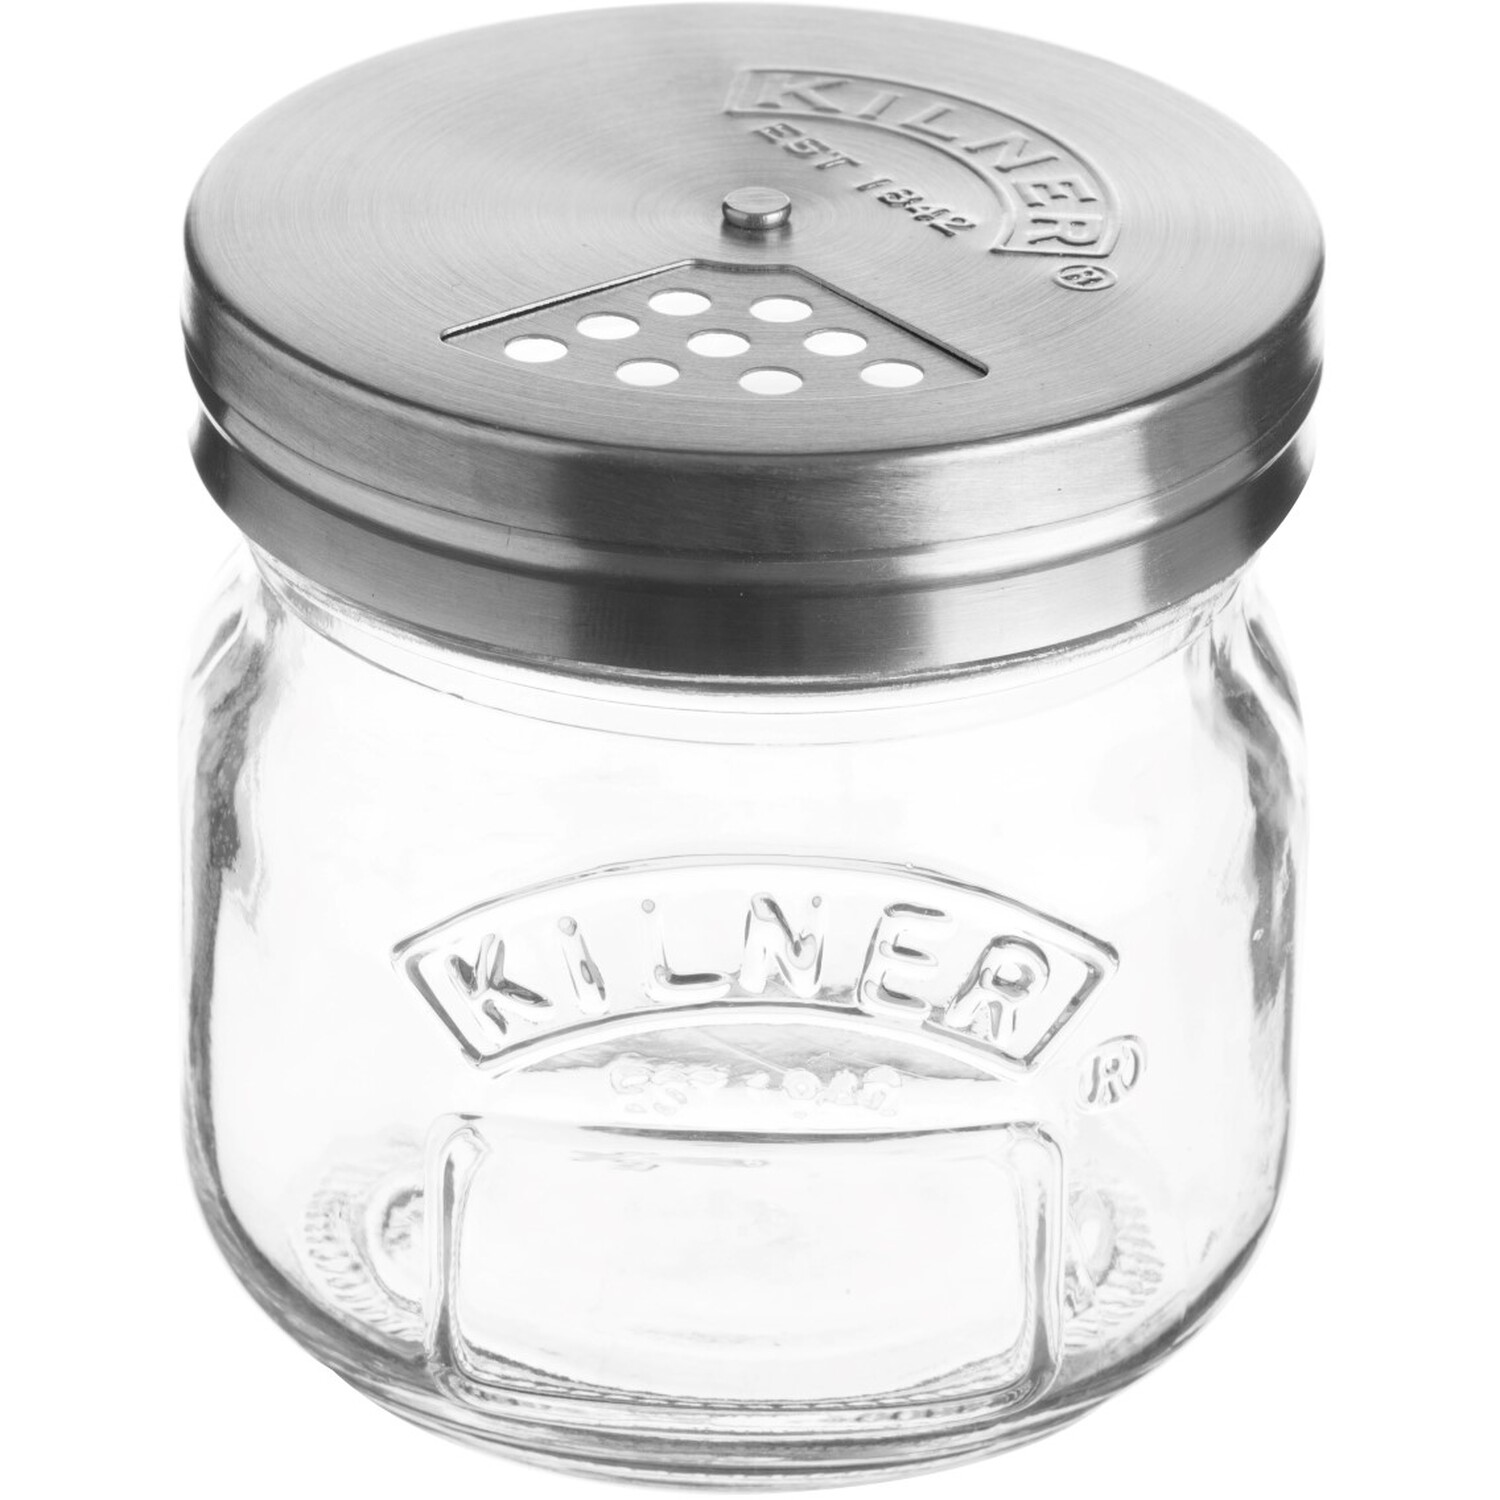 Kilner 250ml Storage Jar with Lid Image 1